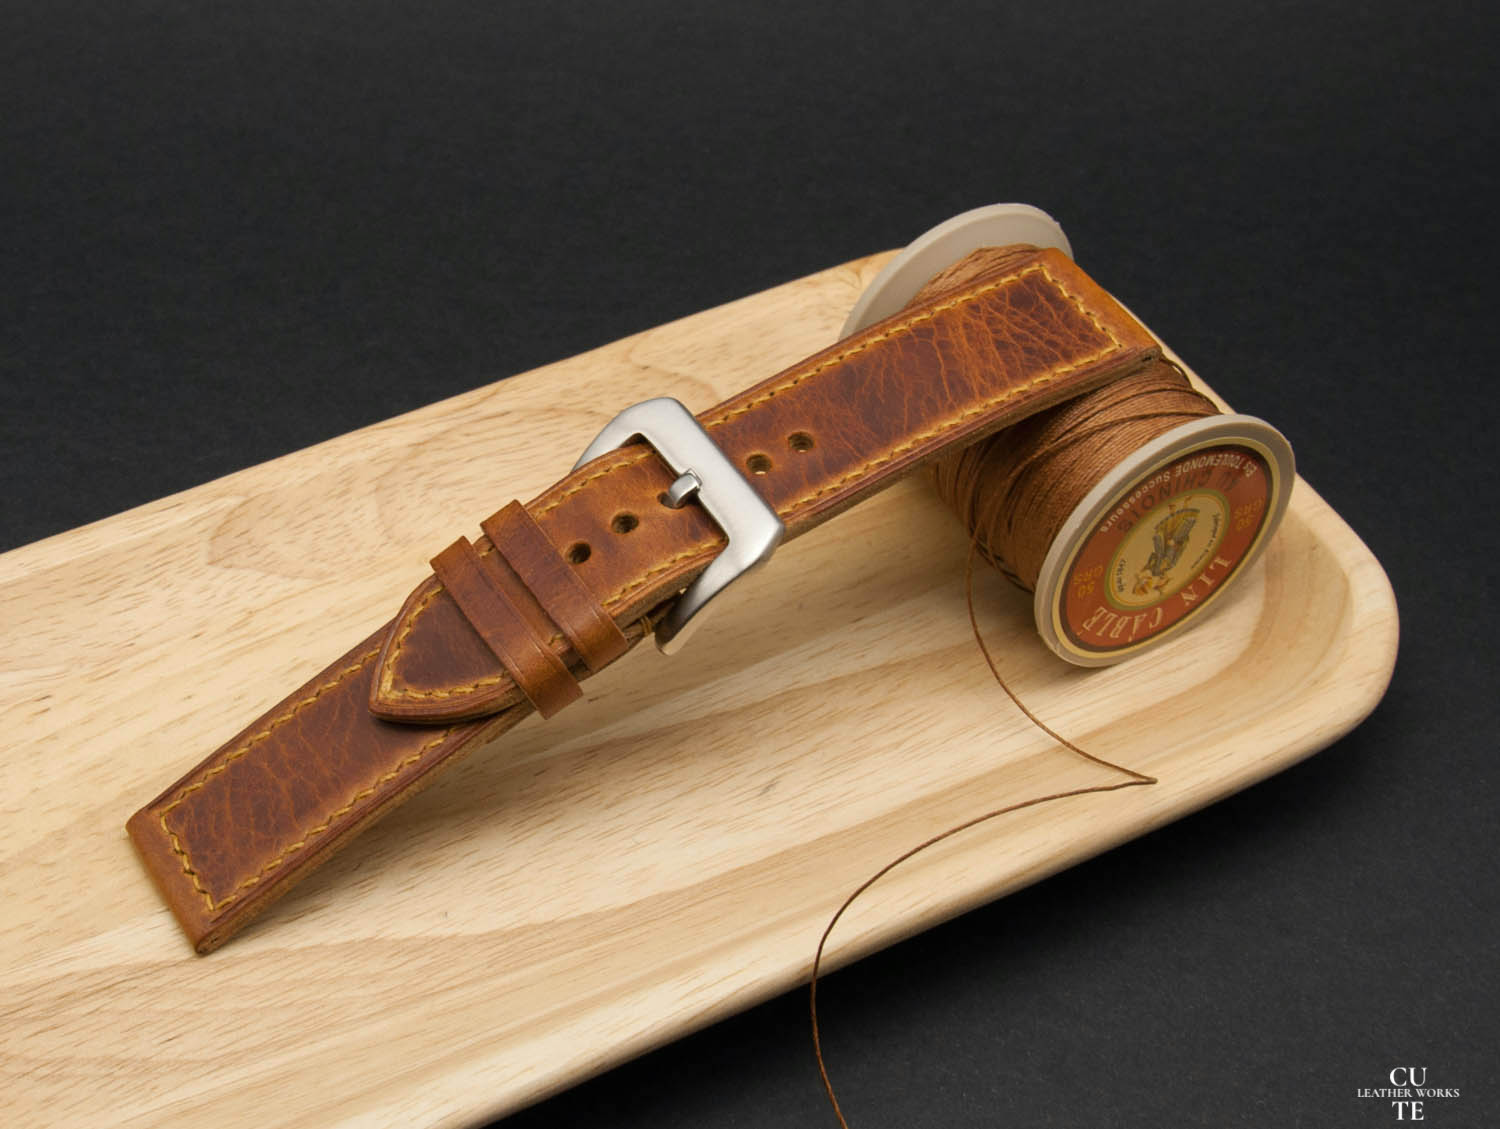 PANERAI Watch Band, Badalassi Carlo Wax Olmo Leather